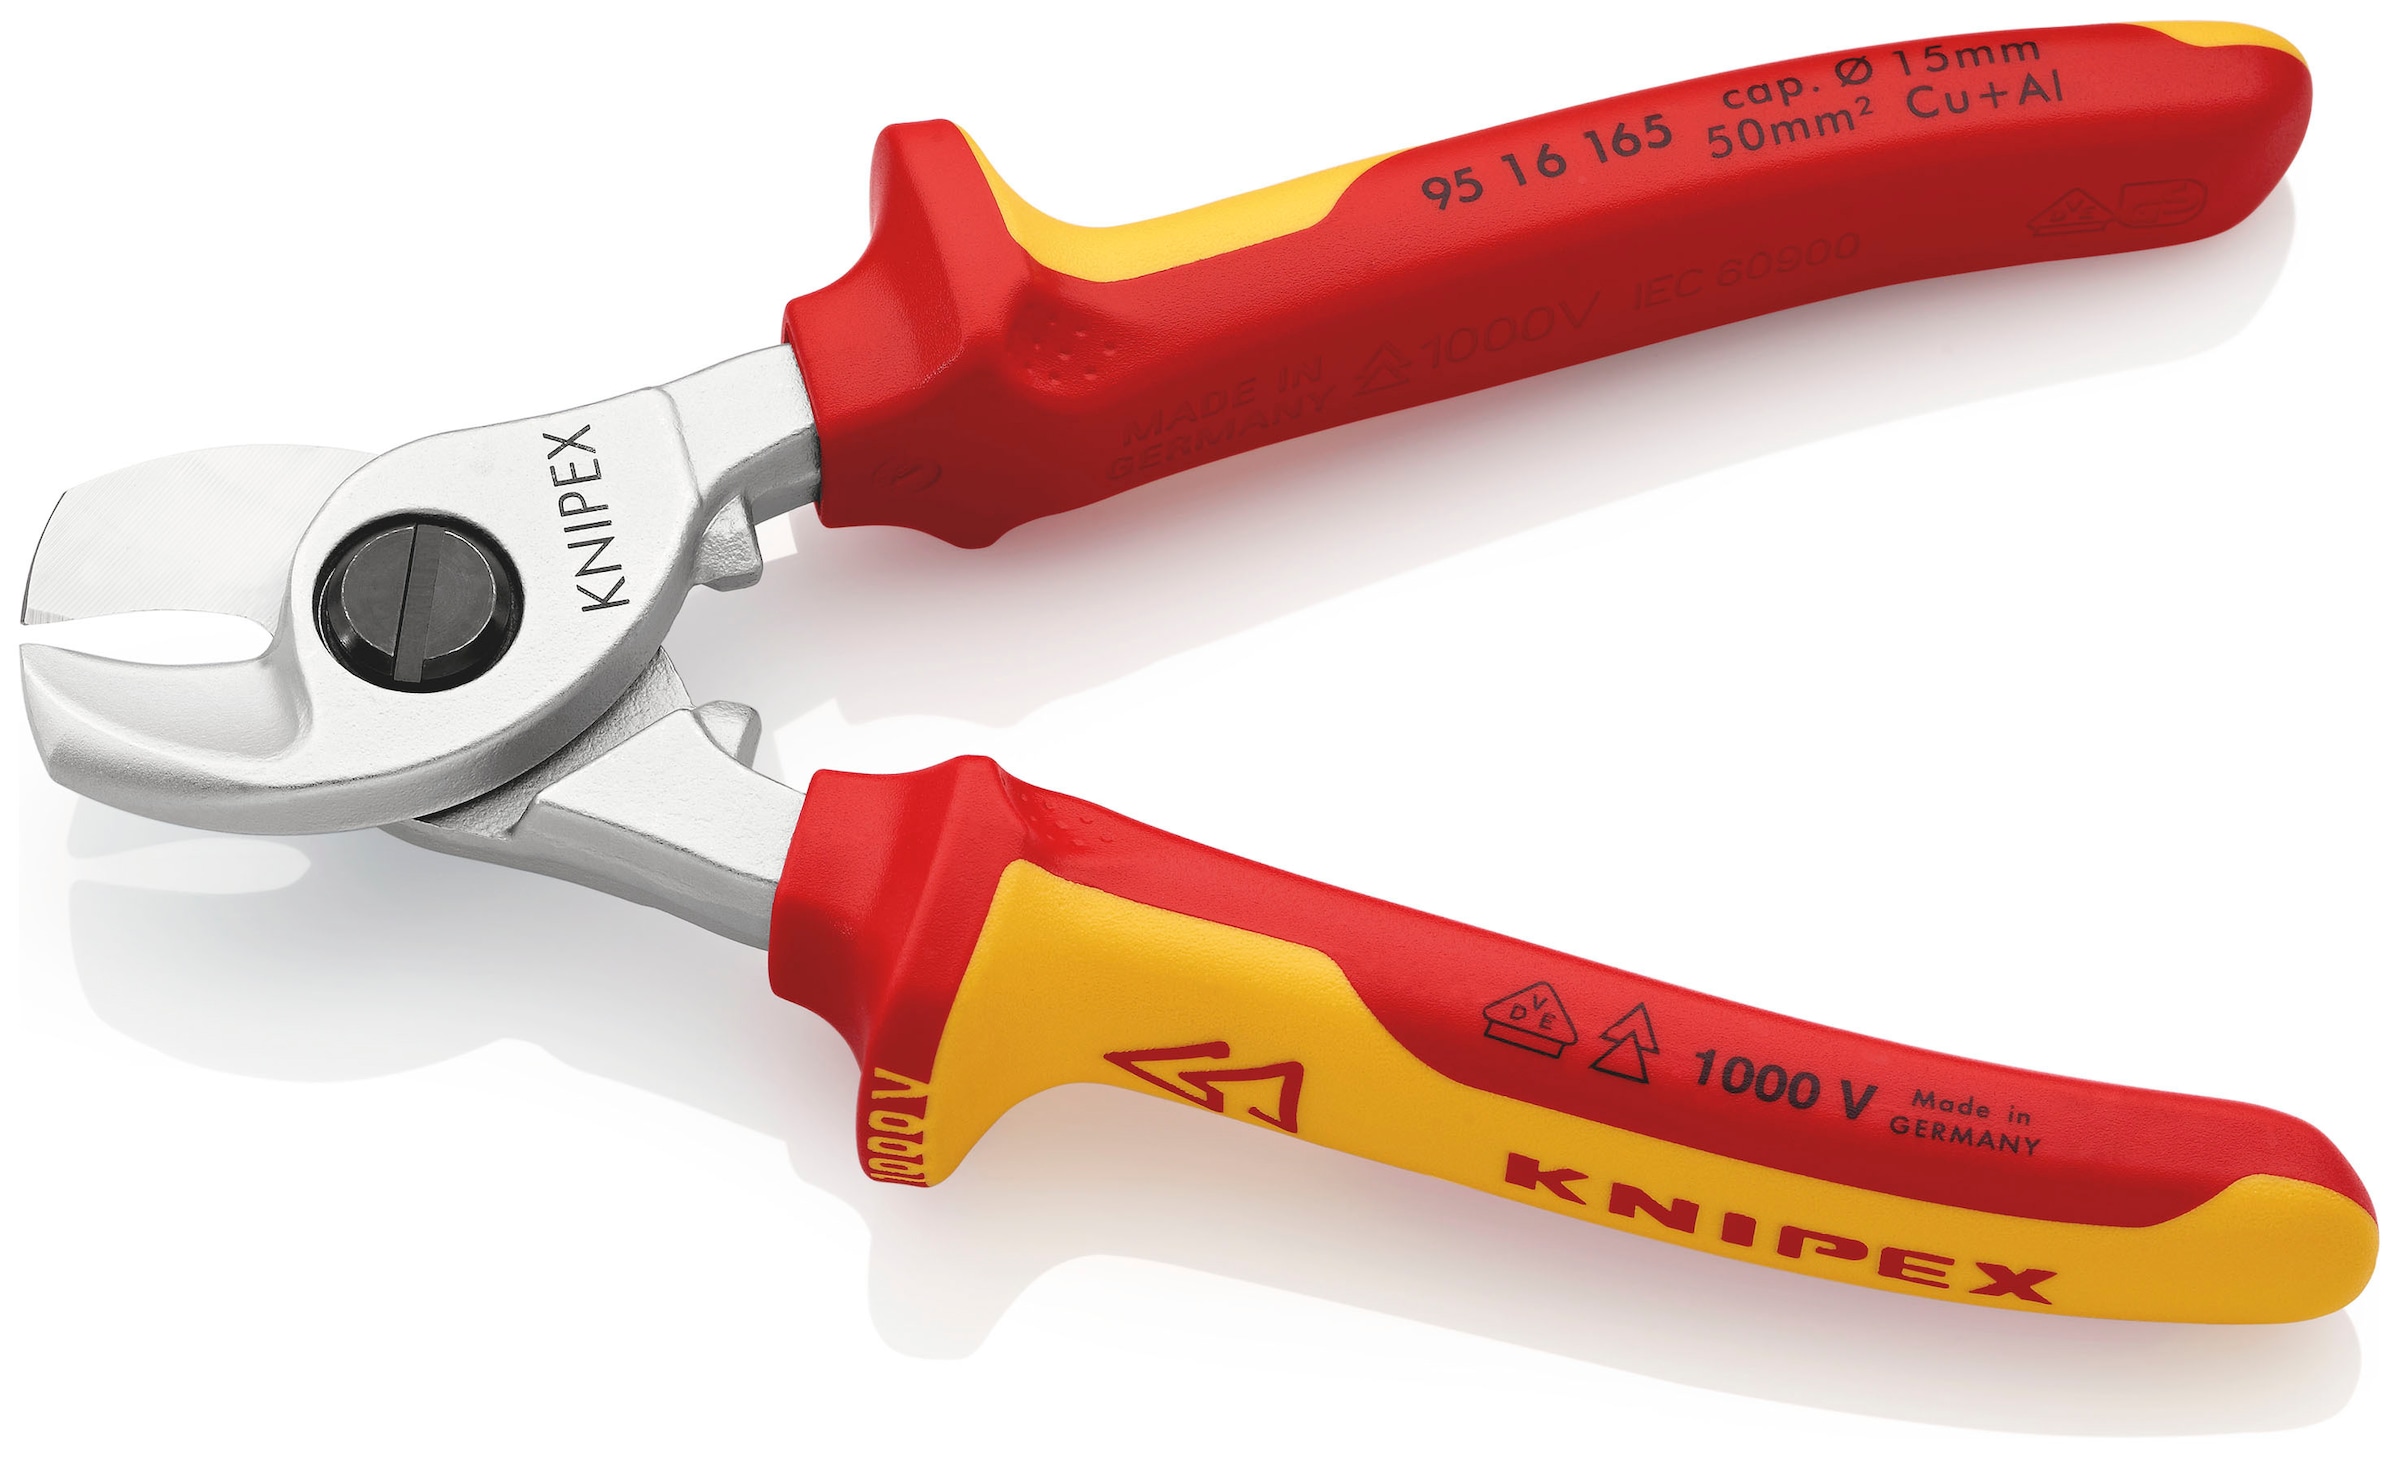 Knipex Elektrikerschere »95 16 165 Kabelschere«, verchromt, isoliert mit Mehrkomponenten-Hüllen, VDE-geprüft 165 mm